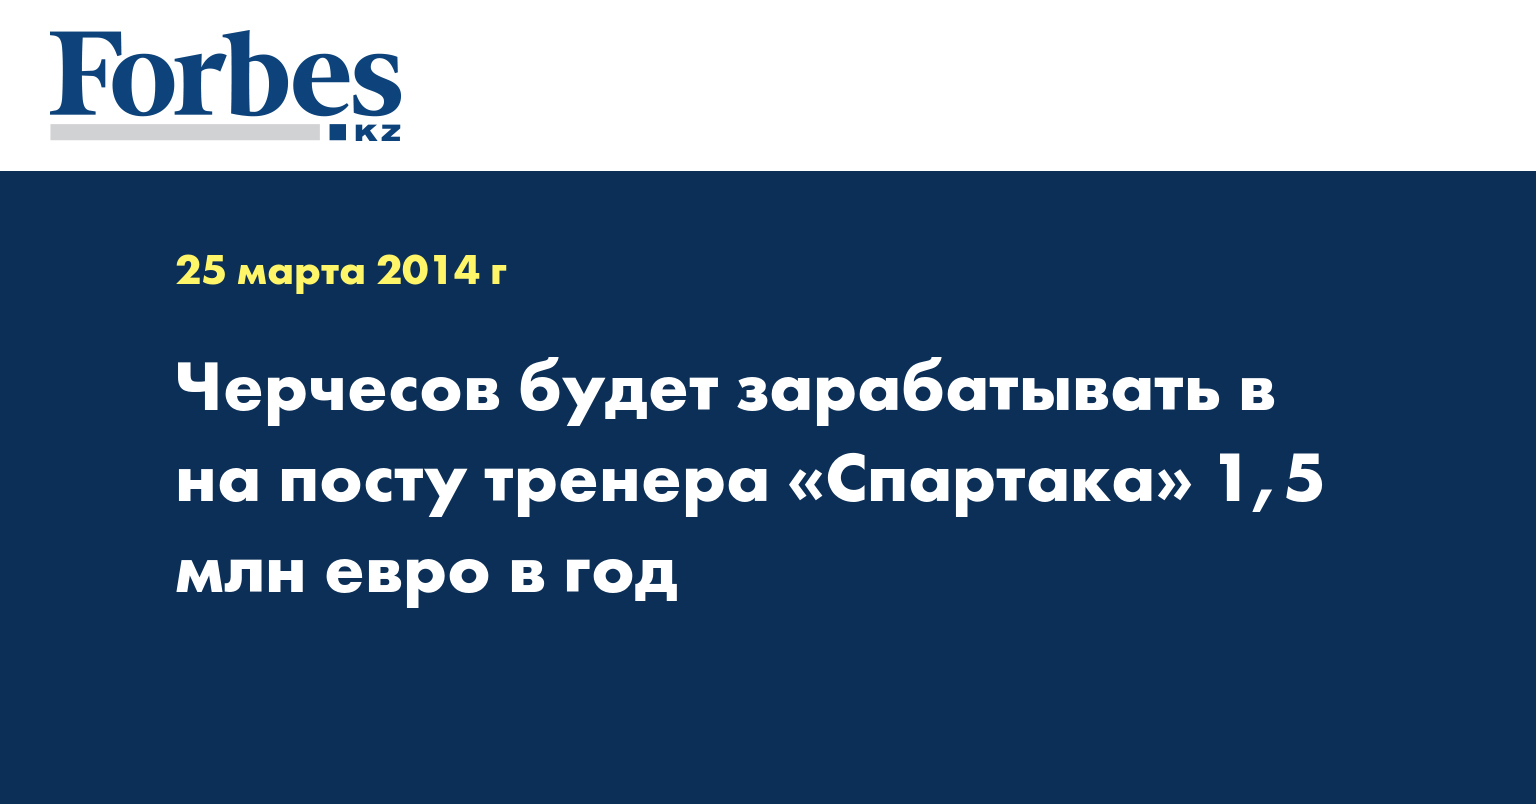 Черчесов будет зарабатывать в на посту тренера «Спартака» 1,5 млн евро в год